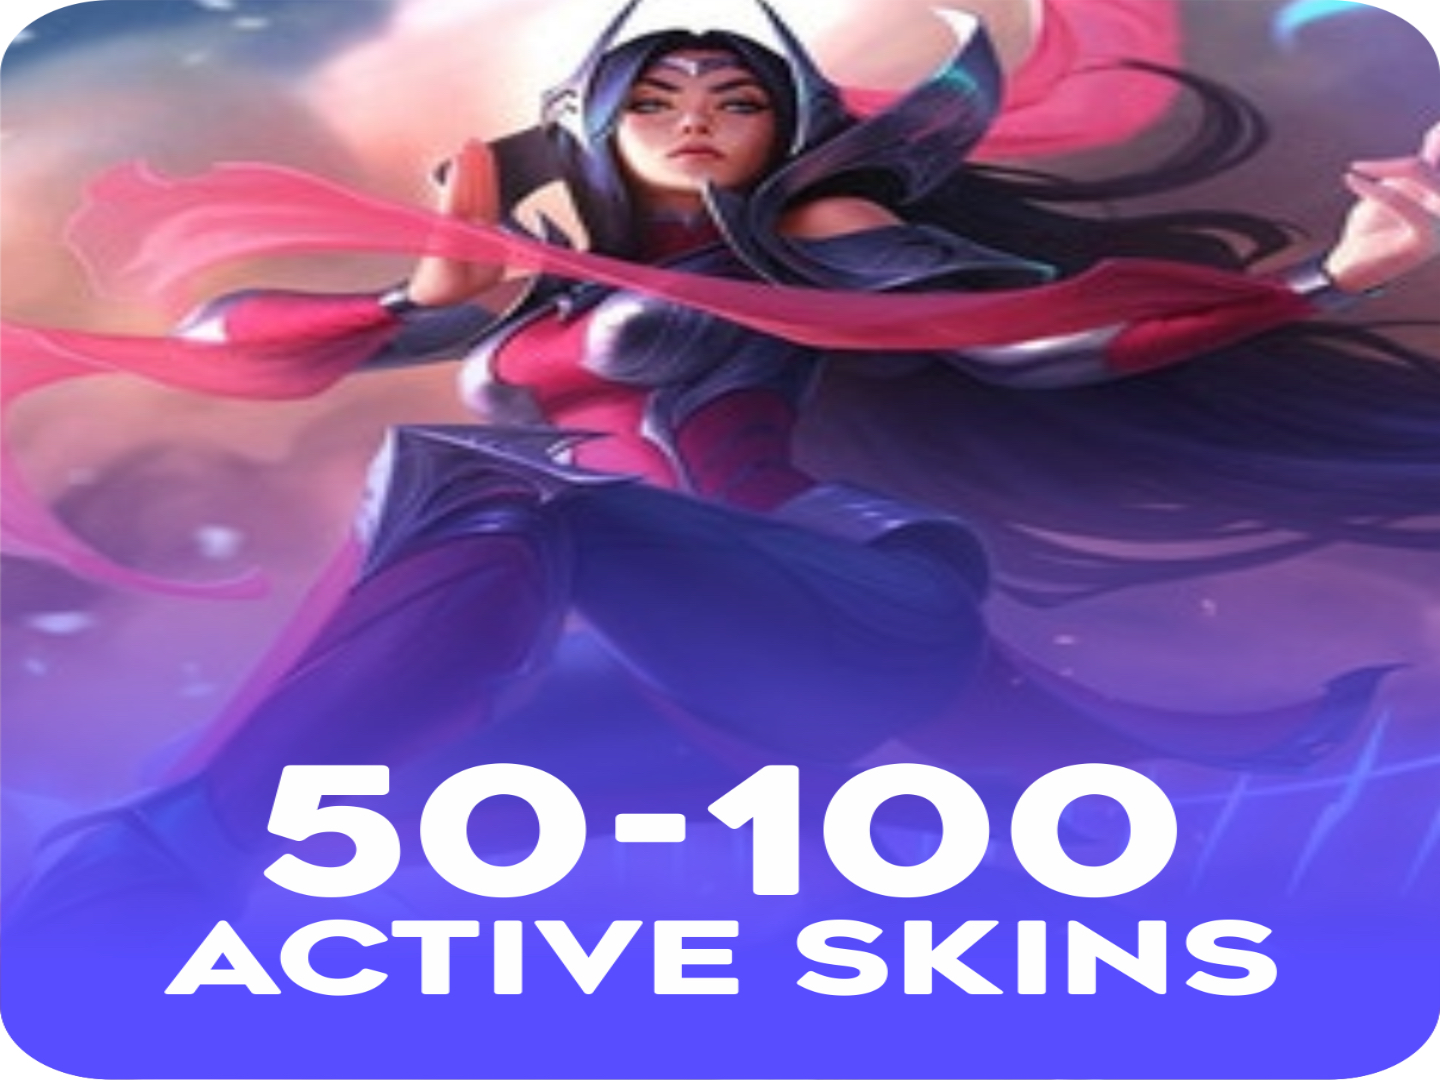 Active 50-100 skins Account